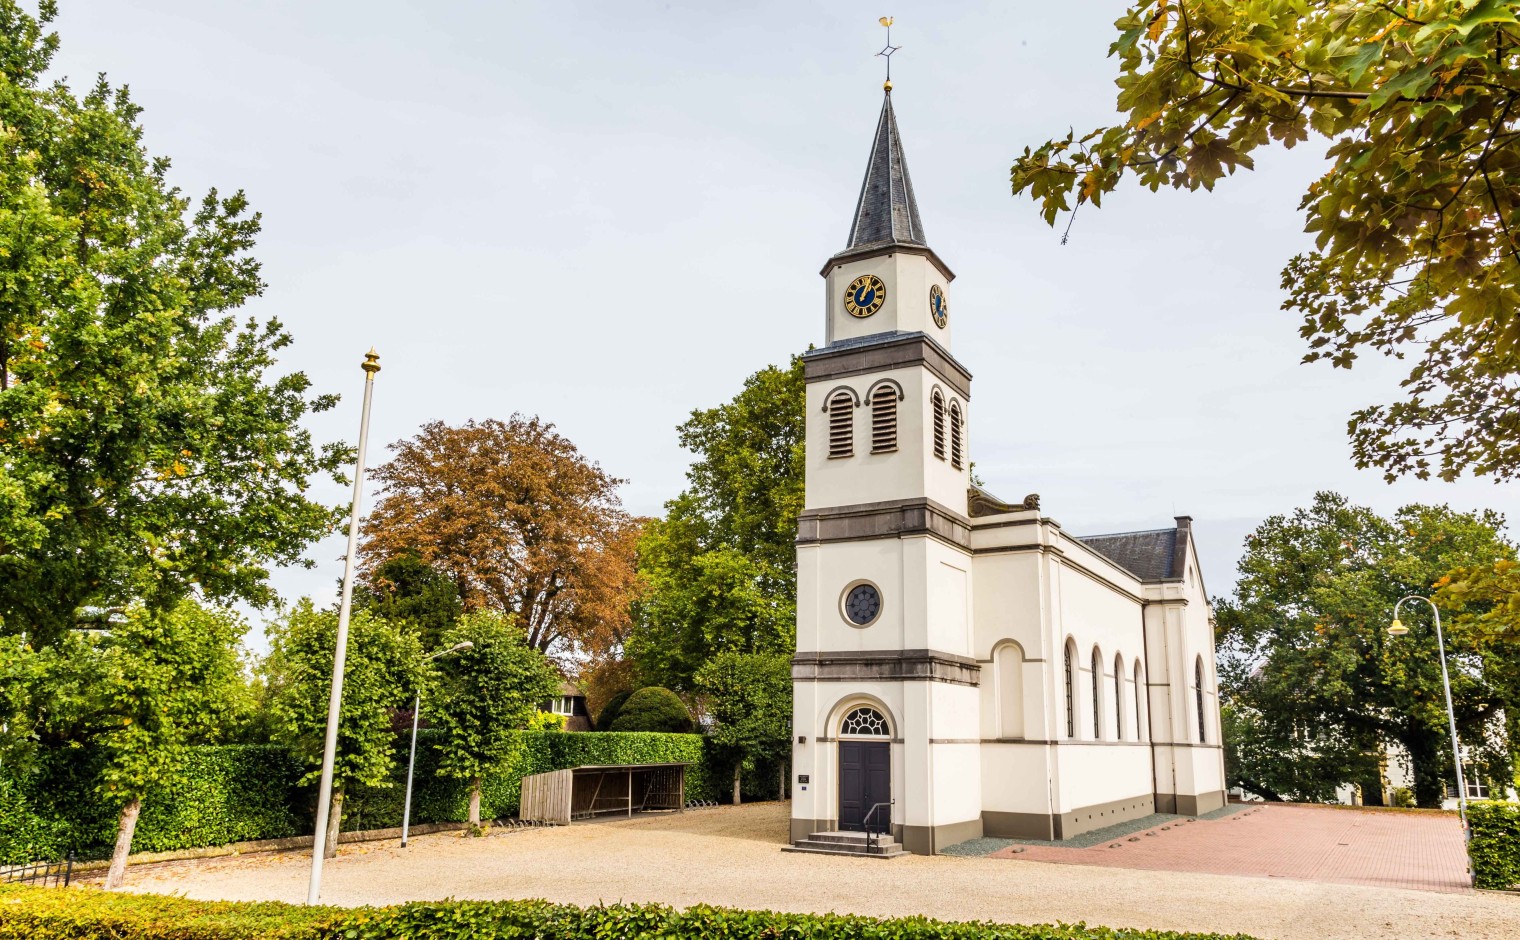 Beeld ter illustratie: Kerkgebouw Waardenburg (Hervormde Gemeente Waardenburg Neerijnen)